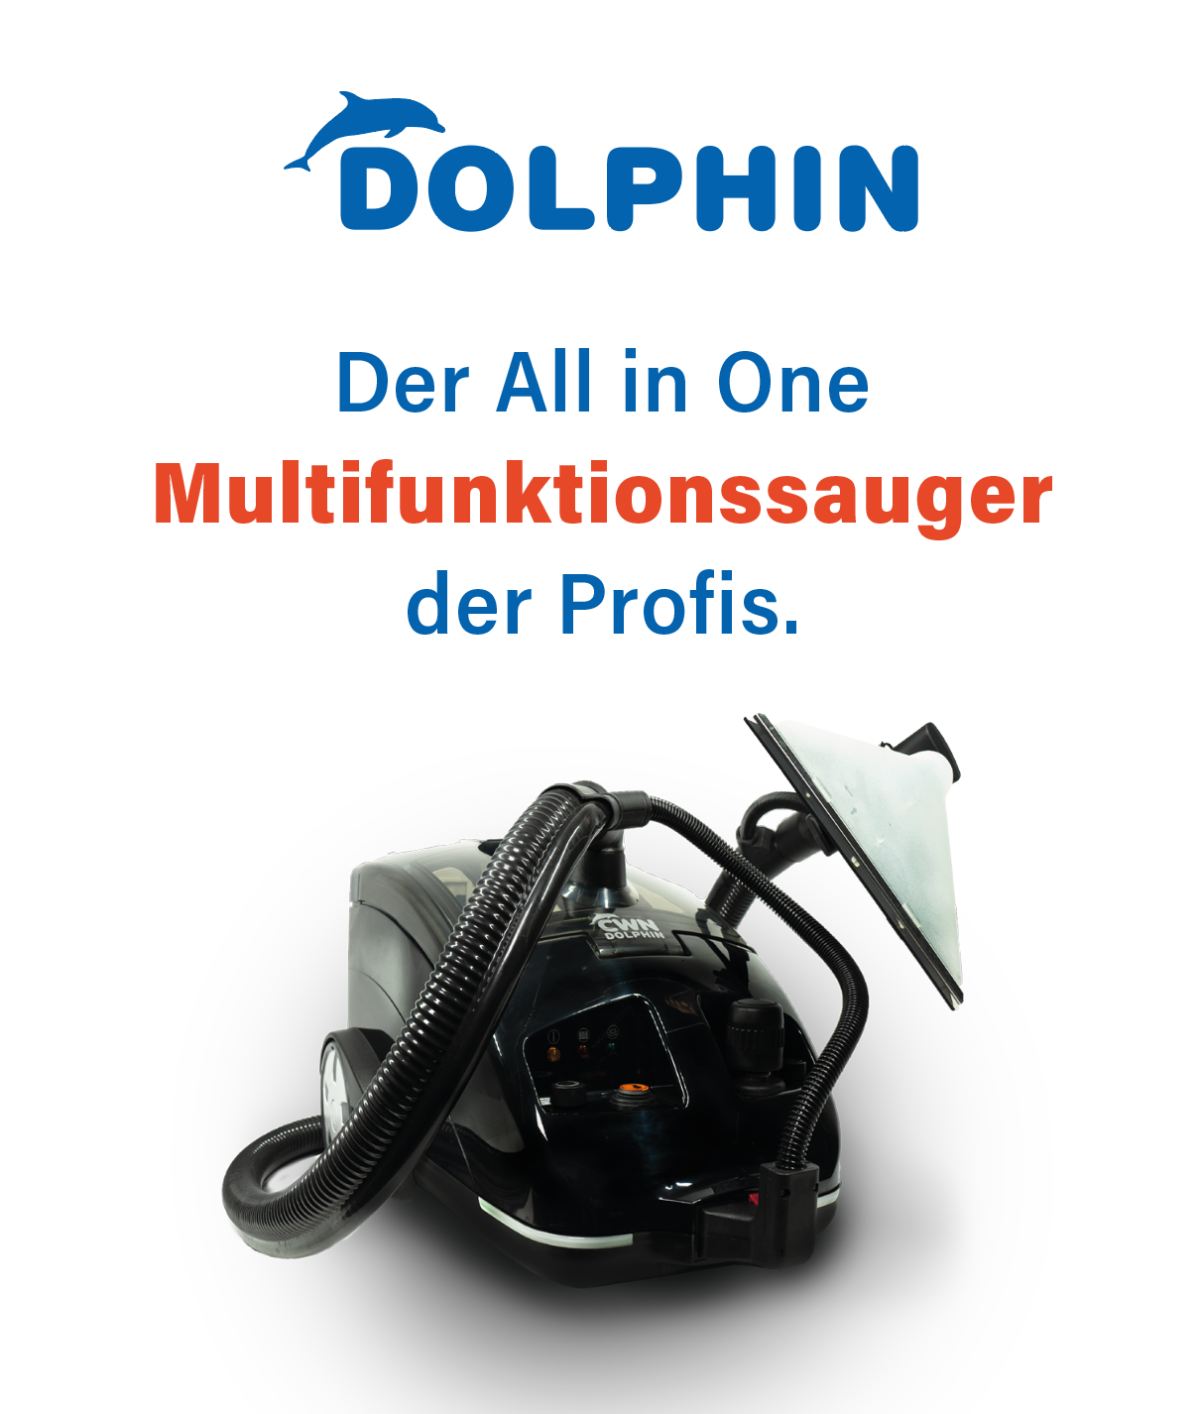 Die Zukunft der Reinigung beginnt hier: Der Dolphin Multifunktionsauger in Live-Demo!